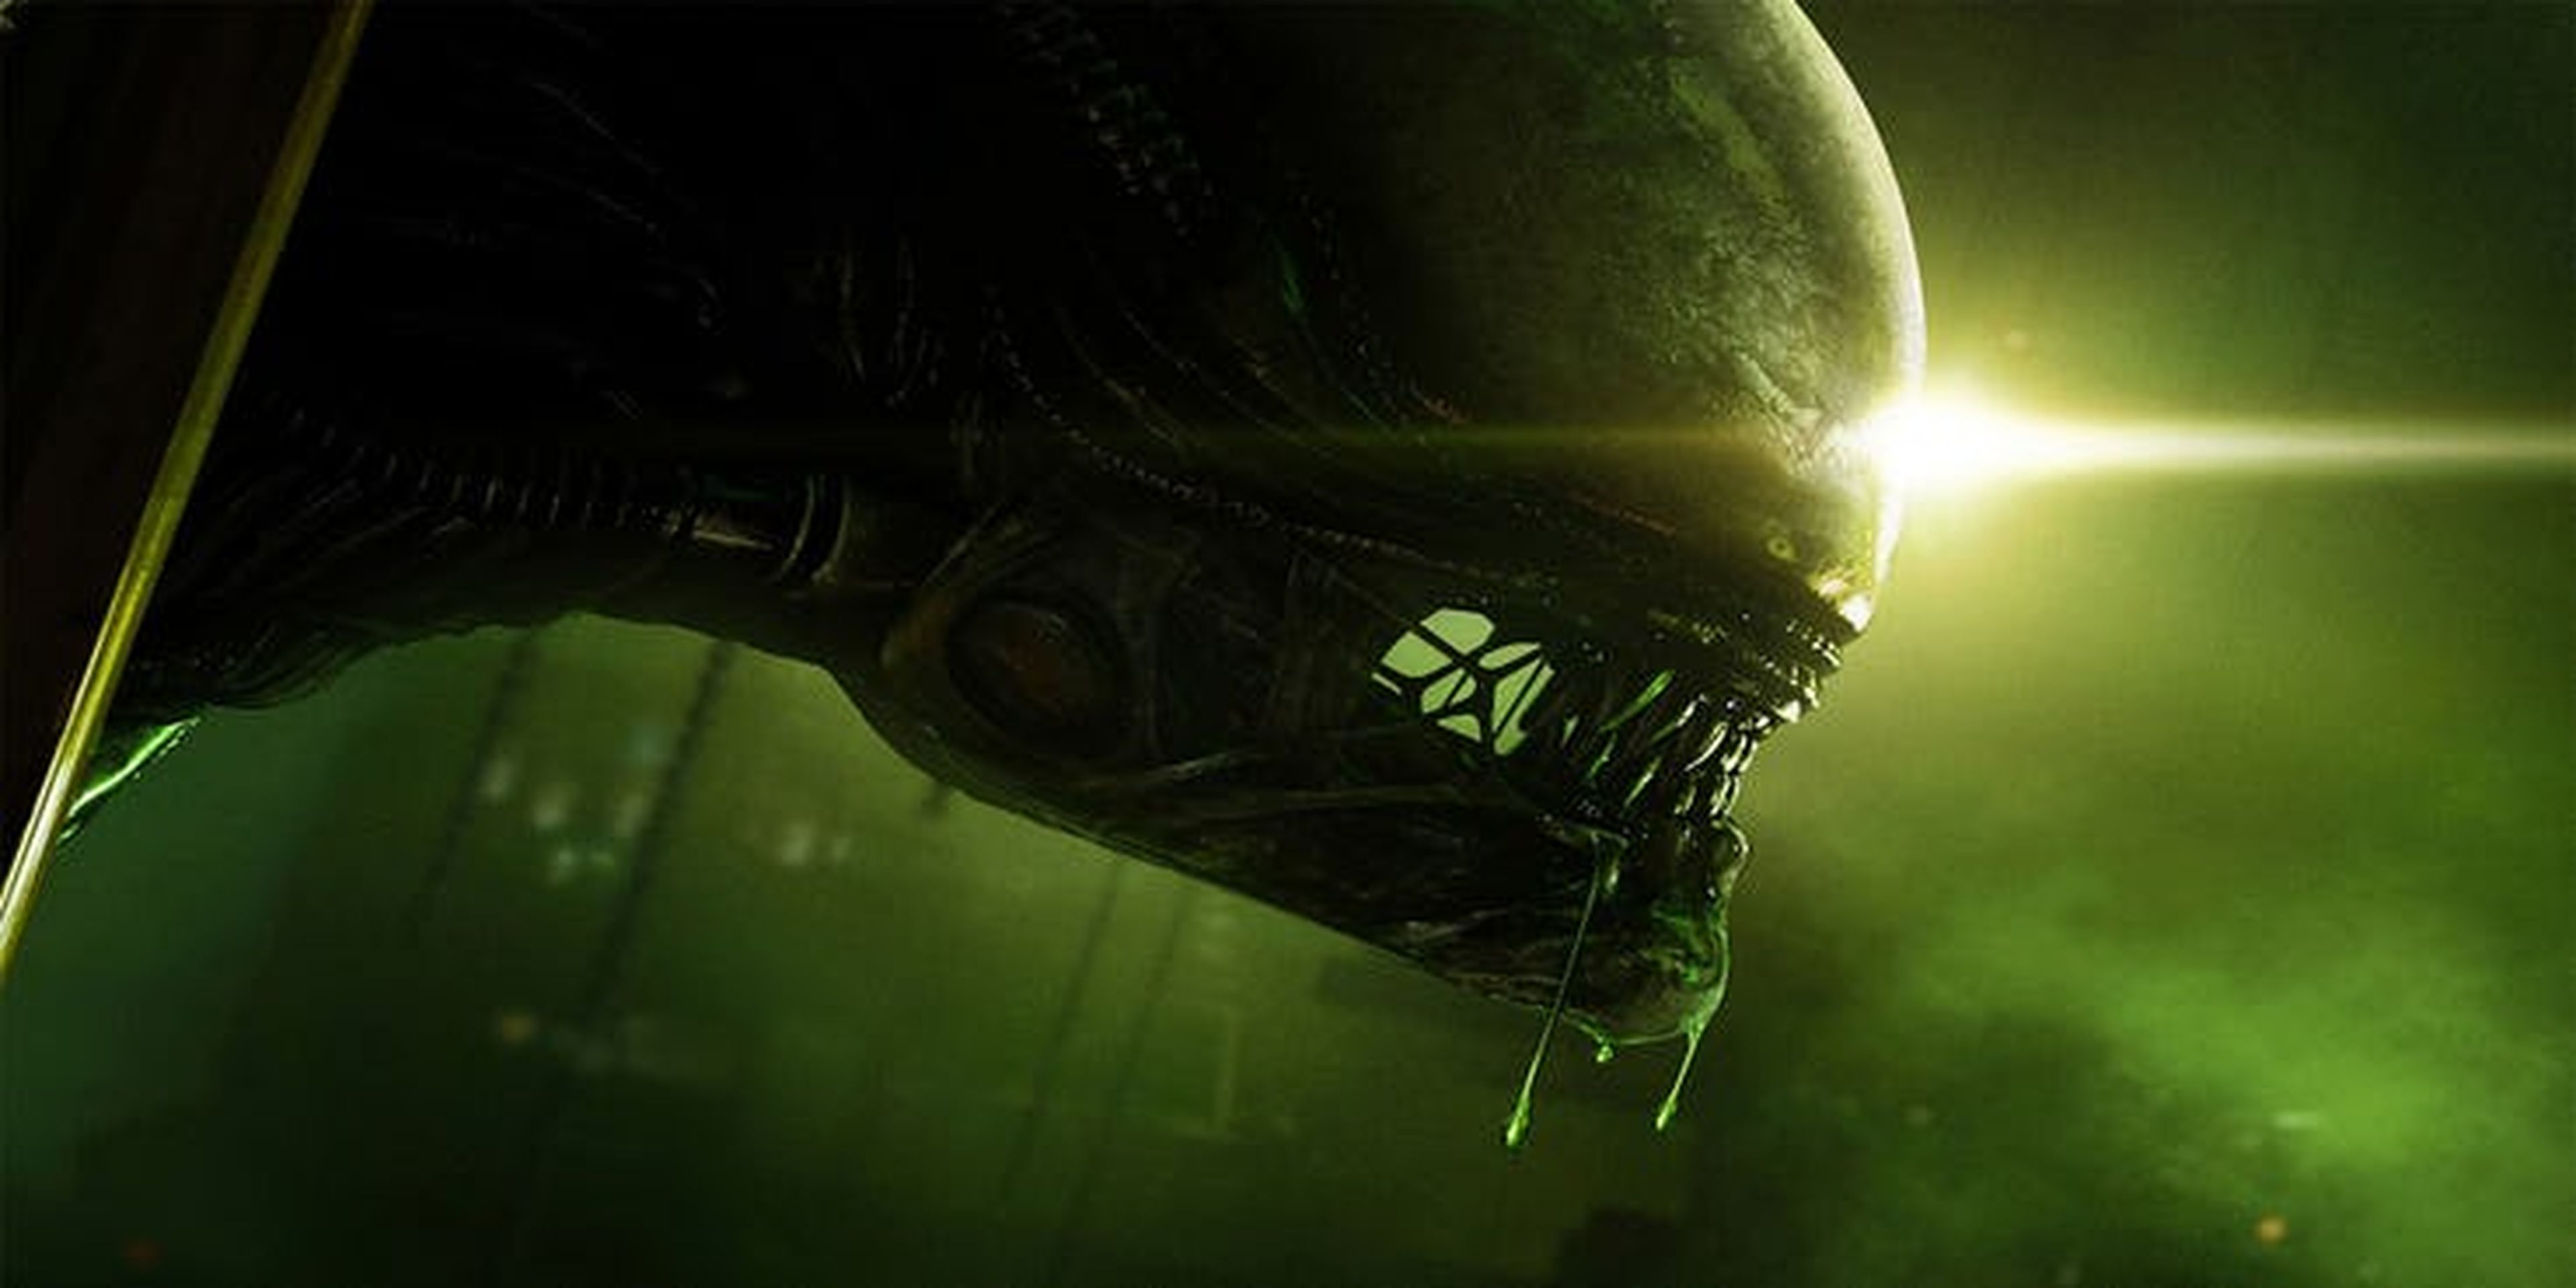 Fox confirma que no habrá nuevas películas de Alien